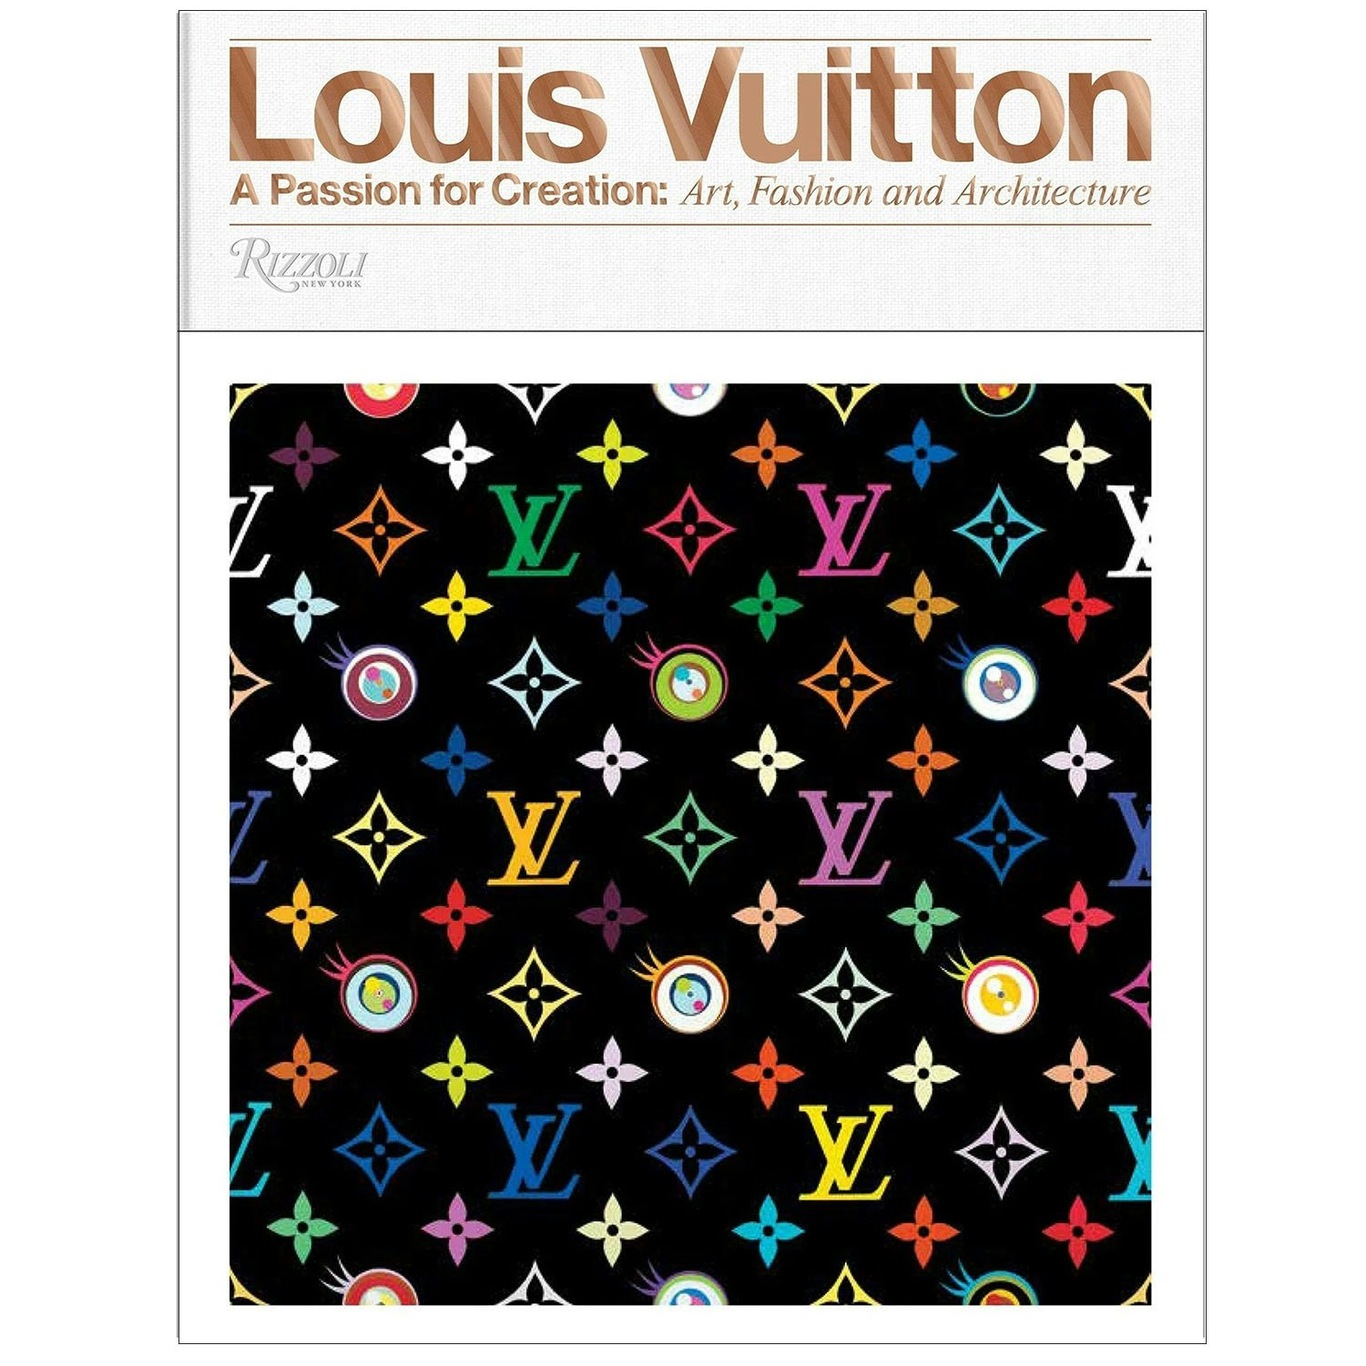 Louis Vuitton – A Passion for Creation Boek